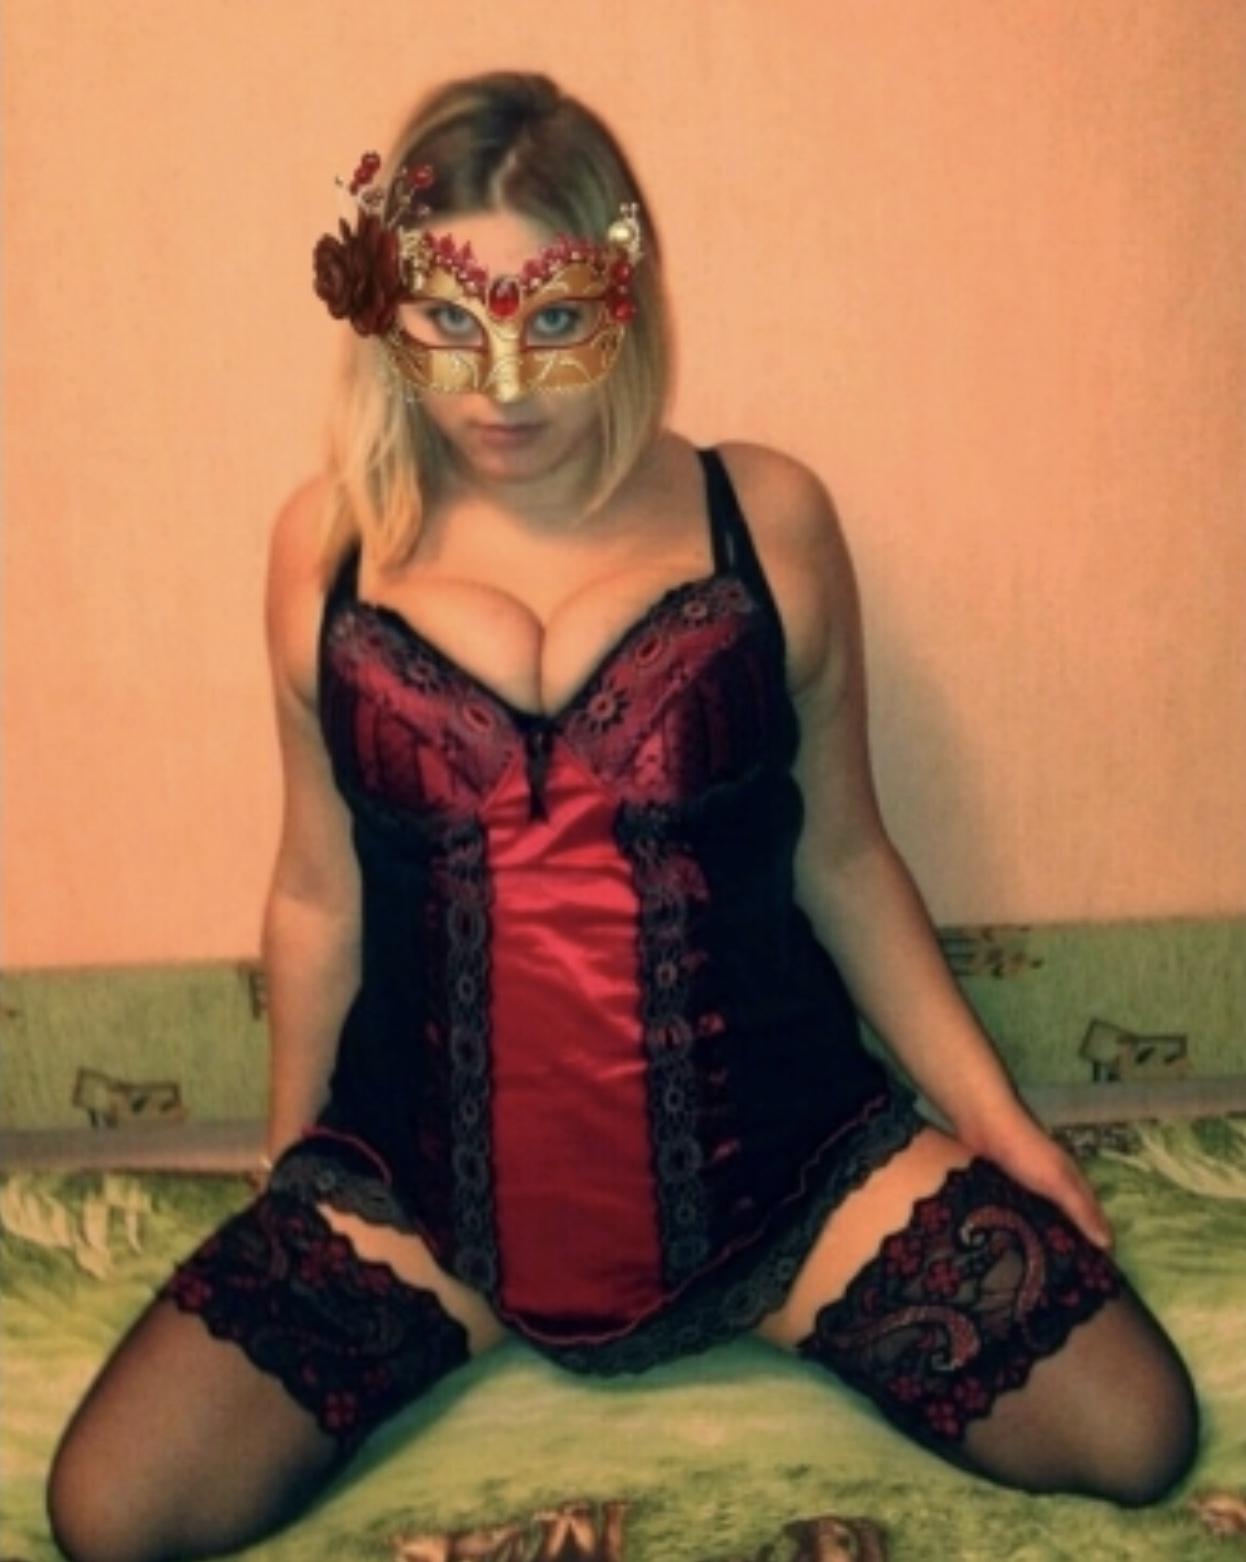 Проститутка Olga, фото 1, тел: 0731004416. Dniprovskiy area - Киев